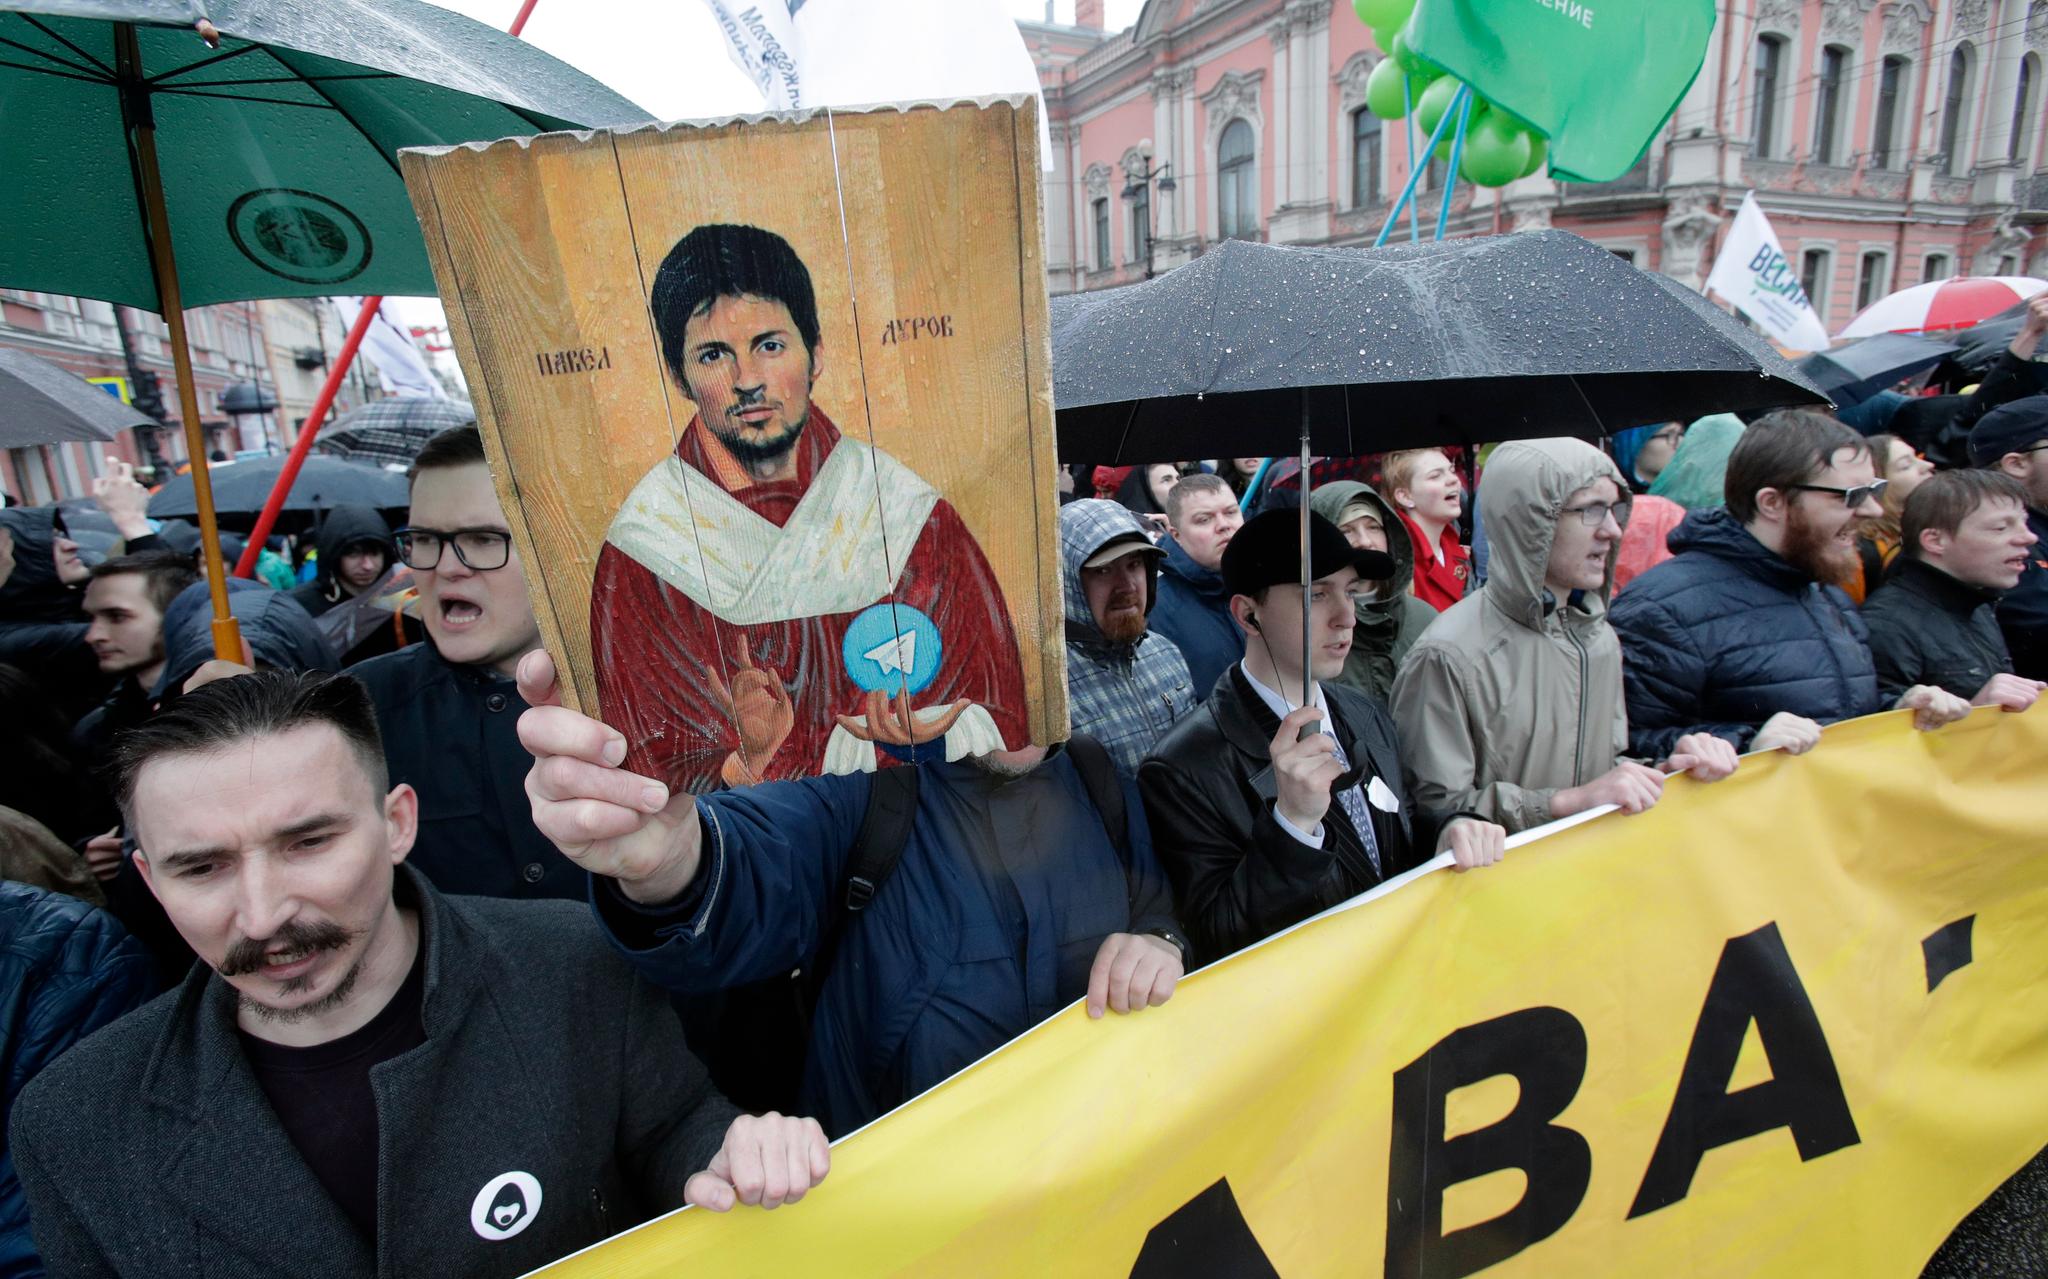 Pavel Durov er mannen bak meldingstjenesten Telegram. Da tjenesten ble truet med å bli blokkert i Russland i mai 2018, førte det til protester i gatene i St. Petersburg. Noen av demonstrantene holdt opp et portrett av Durov der han fremstilles som et ikon.